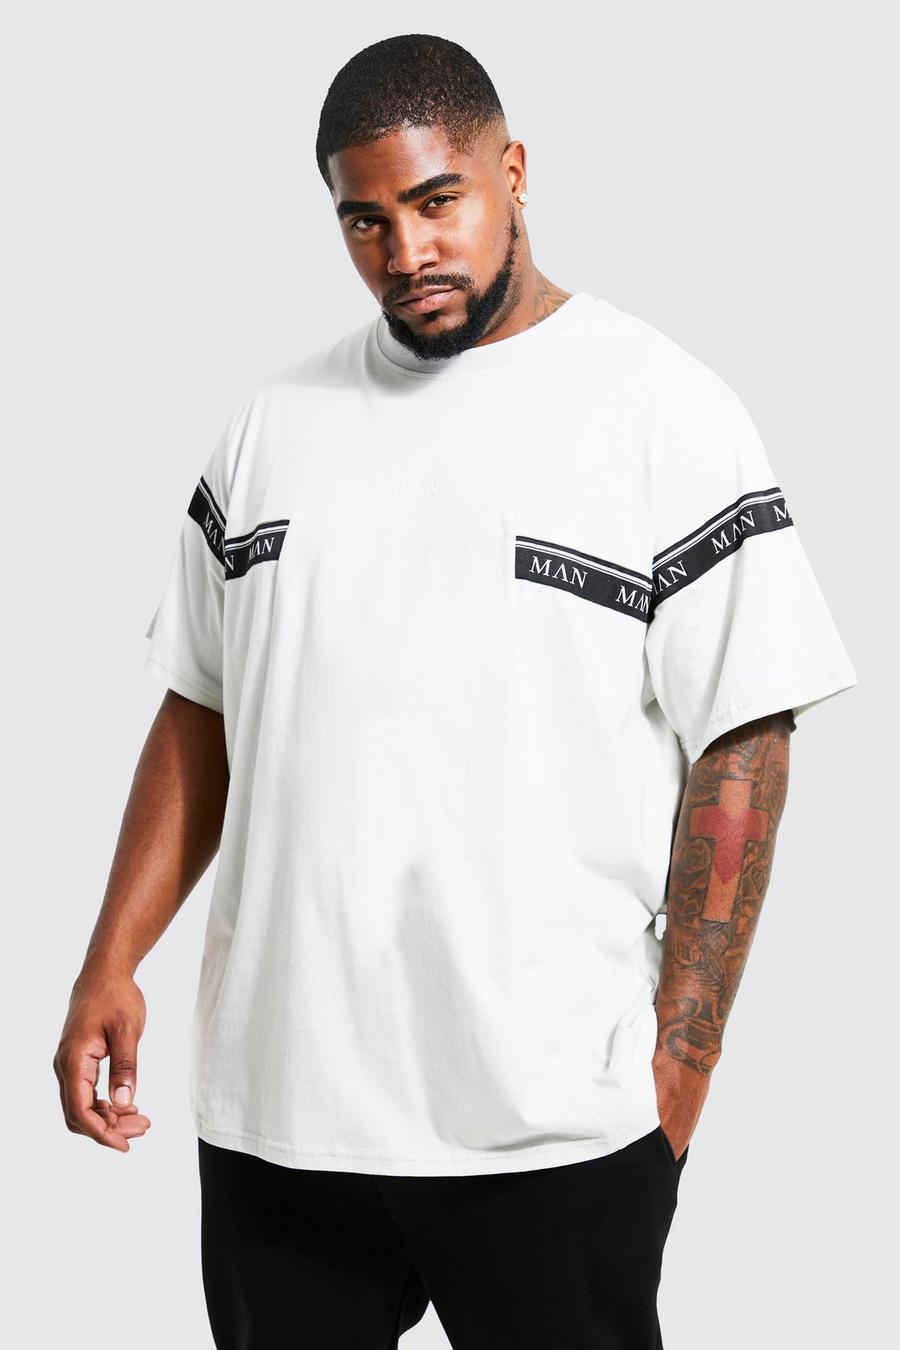 T-shirt Plus Size Man con caratteri romani e striscia, Light grey grigio